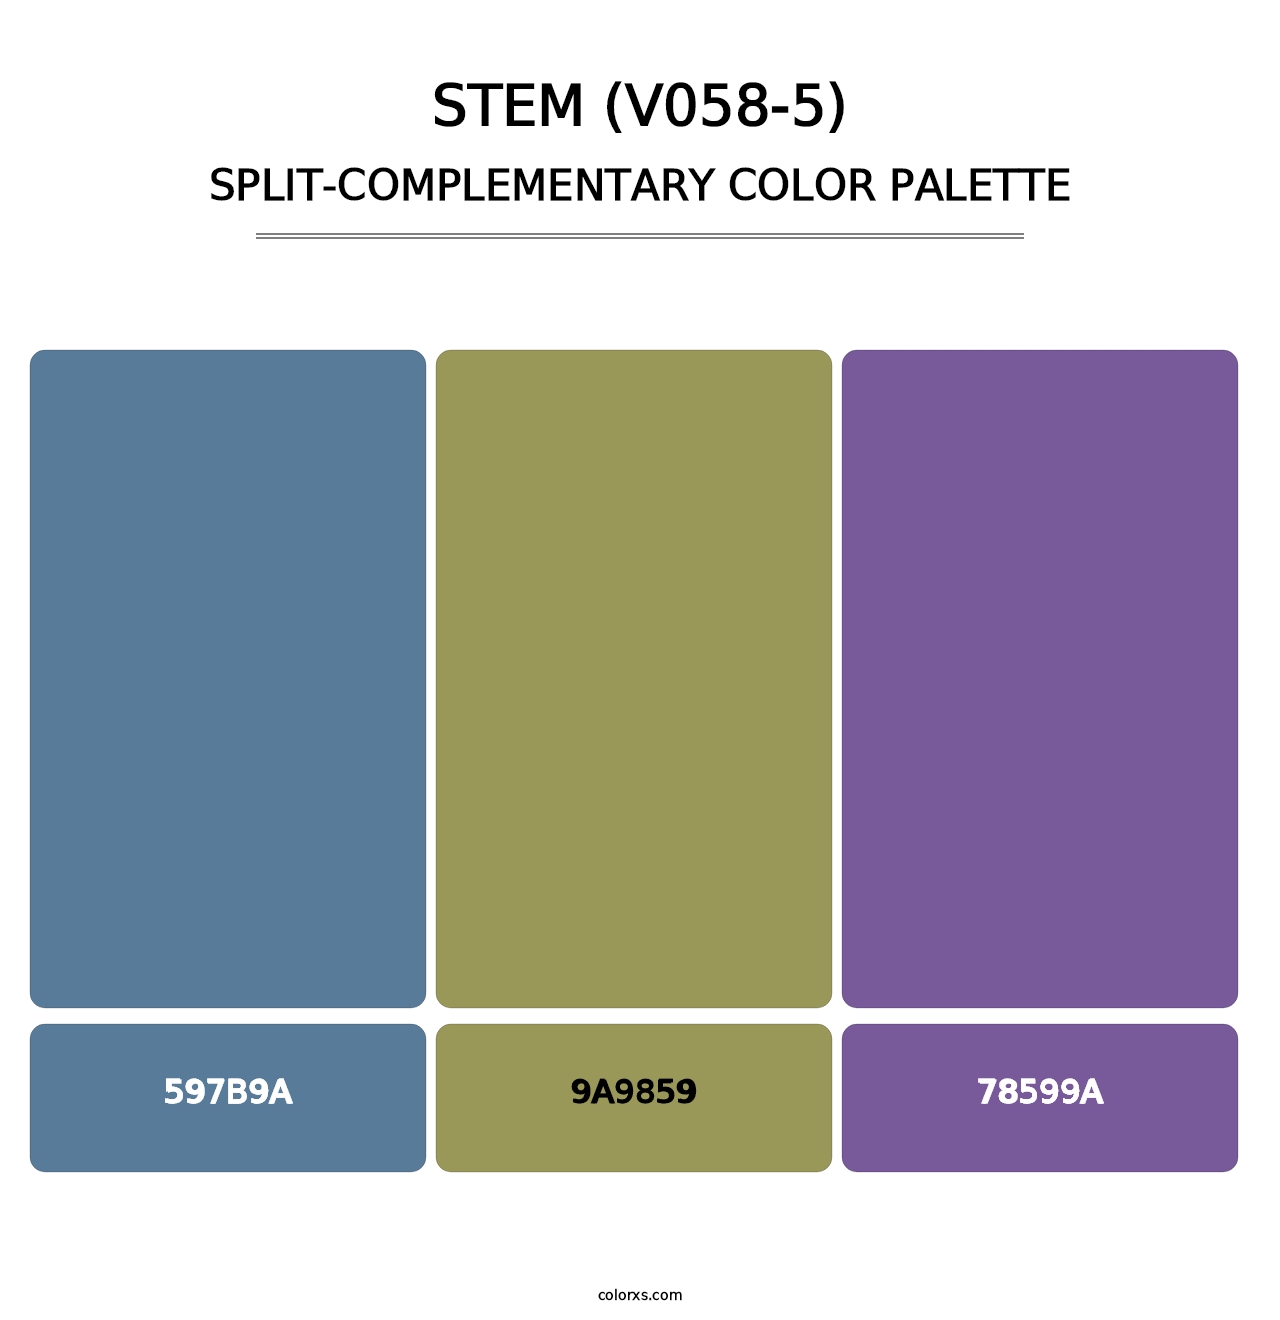 Stem (V058-5) - Split-Complementary Color Palette